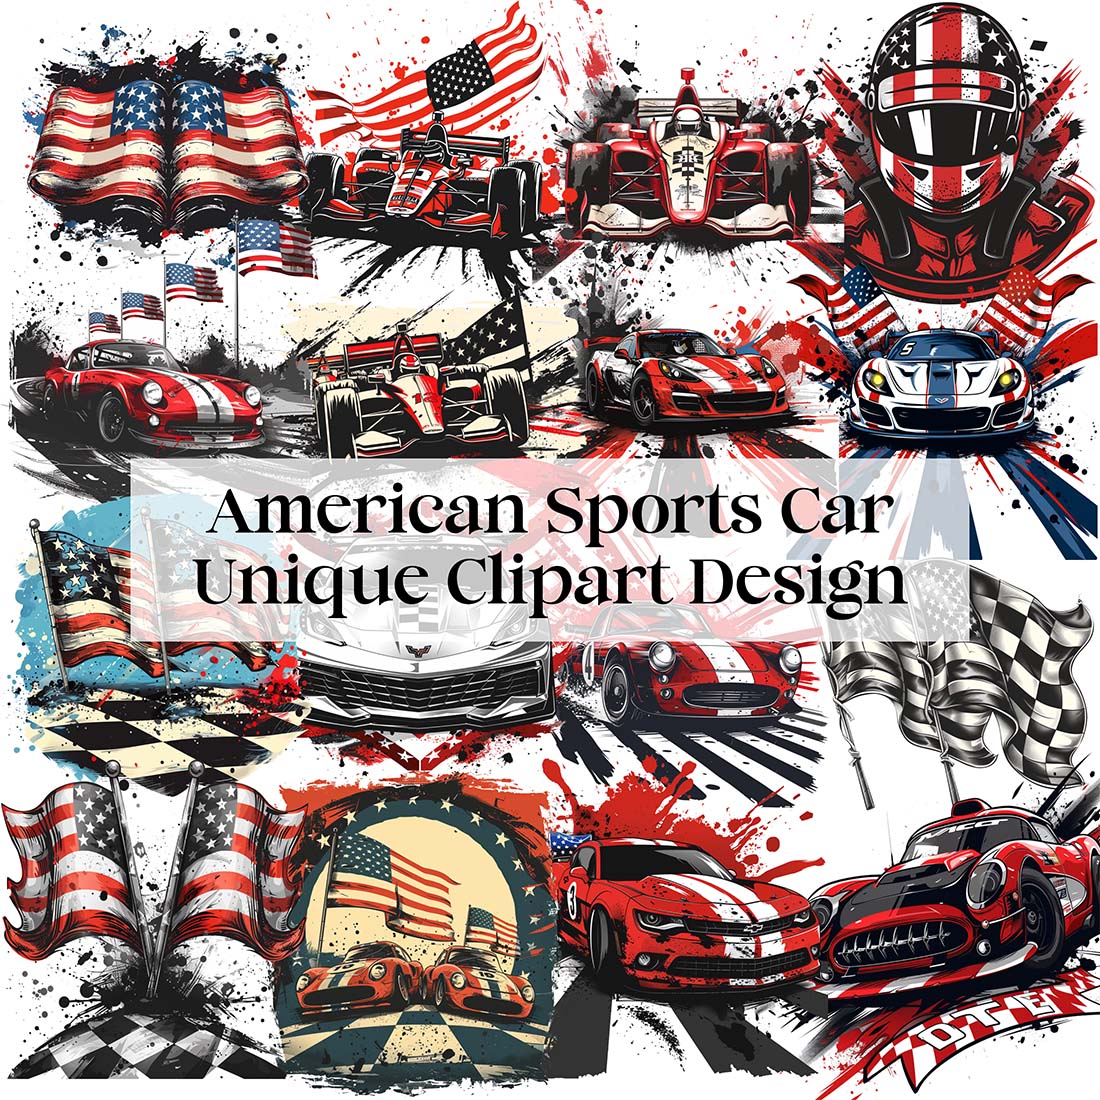 American Sports Car Unique Clipart Design cover image.